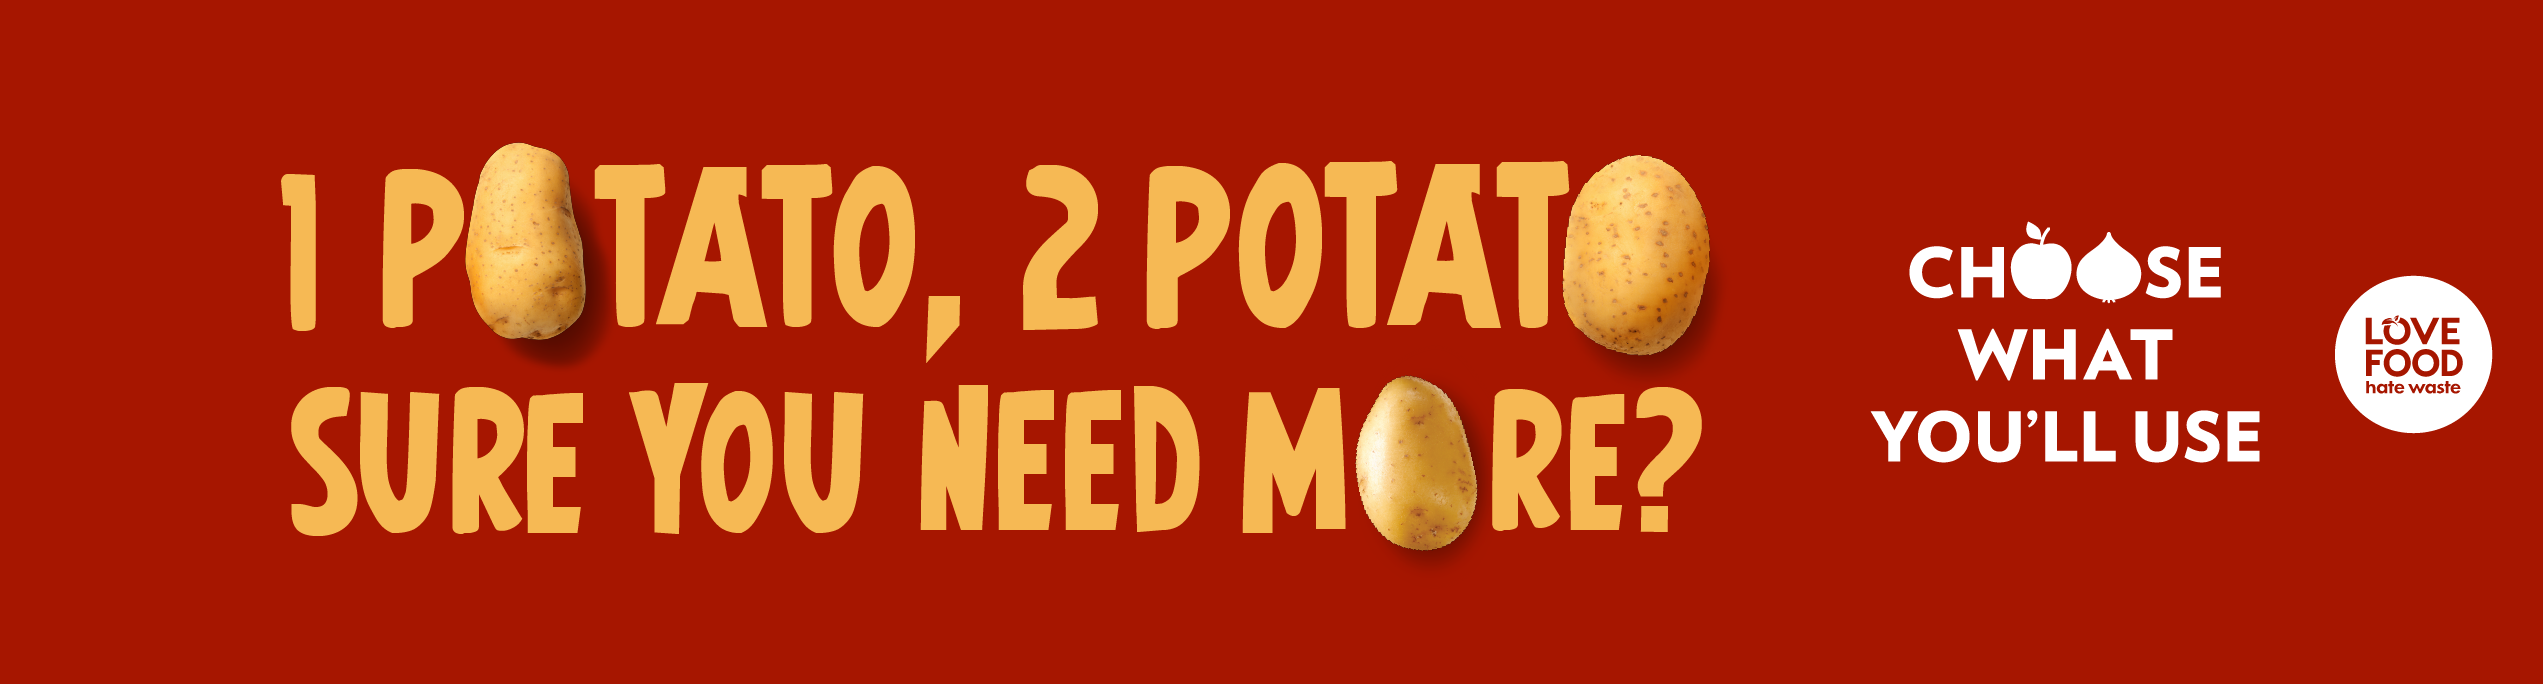 1 potato, 2 potato, sure you need more? Choose what you'll use